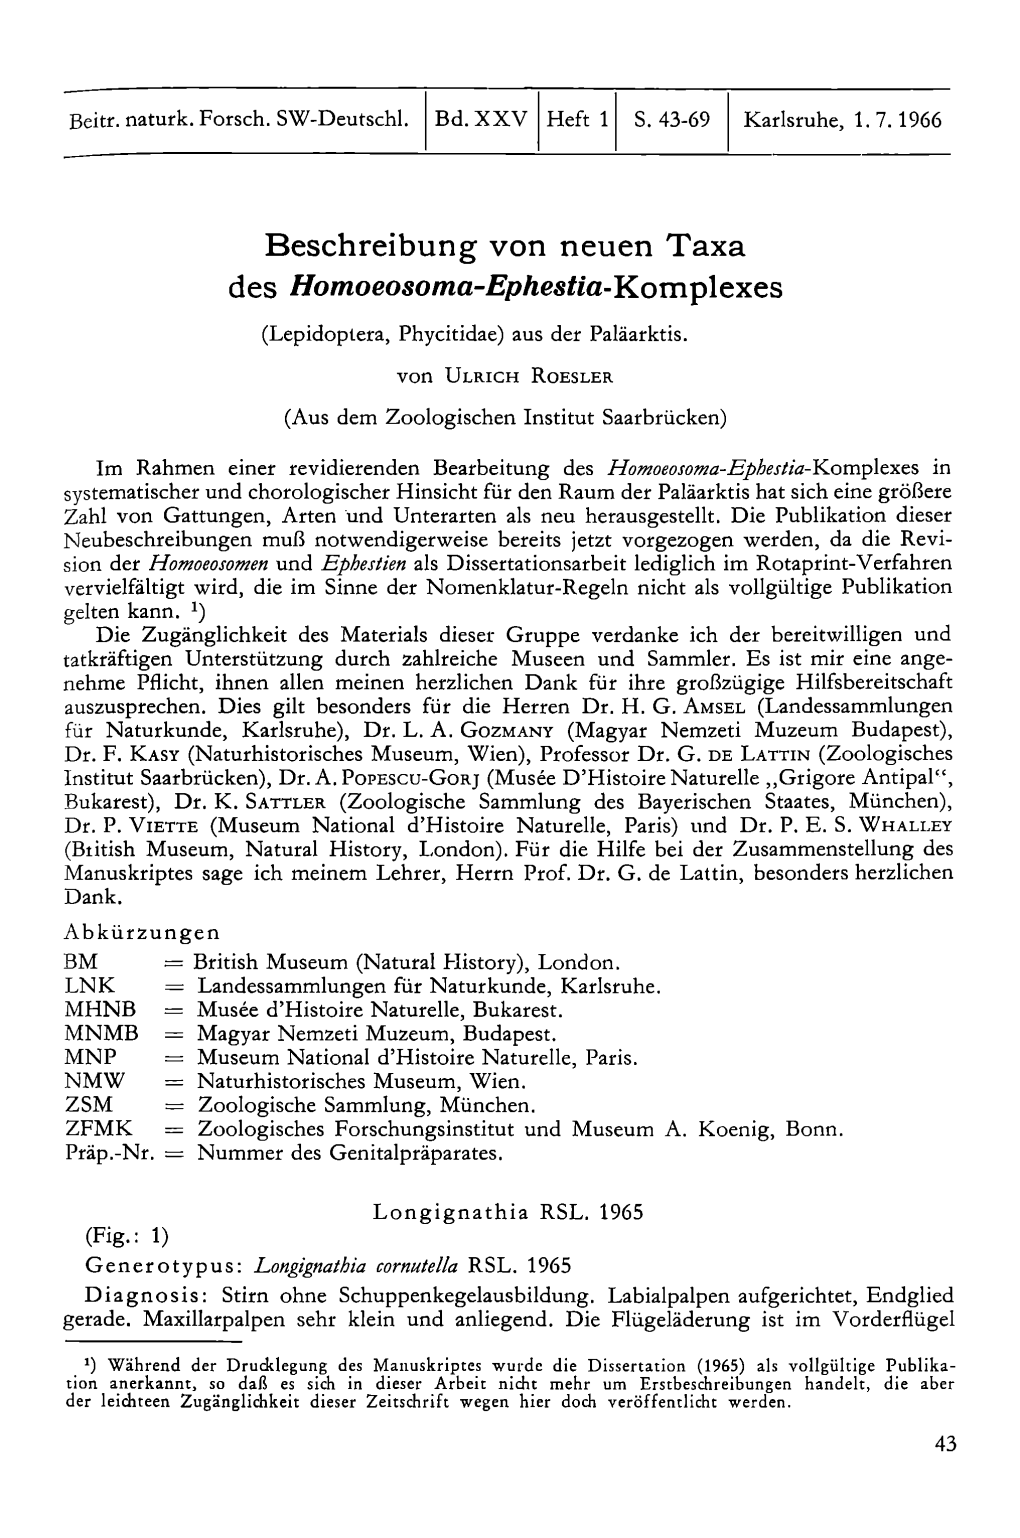 Beschreibung Von Neuen Taxa Des Homoeosoma-Ephestia-Komplexes (Lepidoptera, Phycitidae) Aus Der Paläarktis